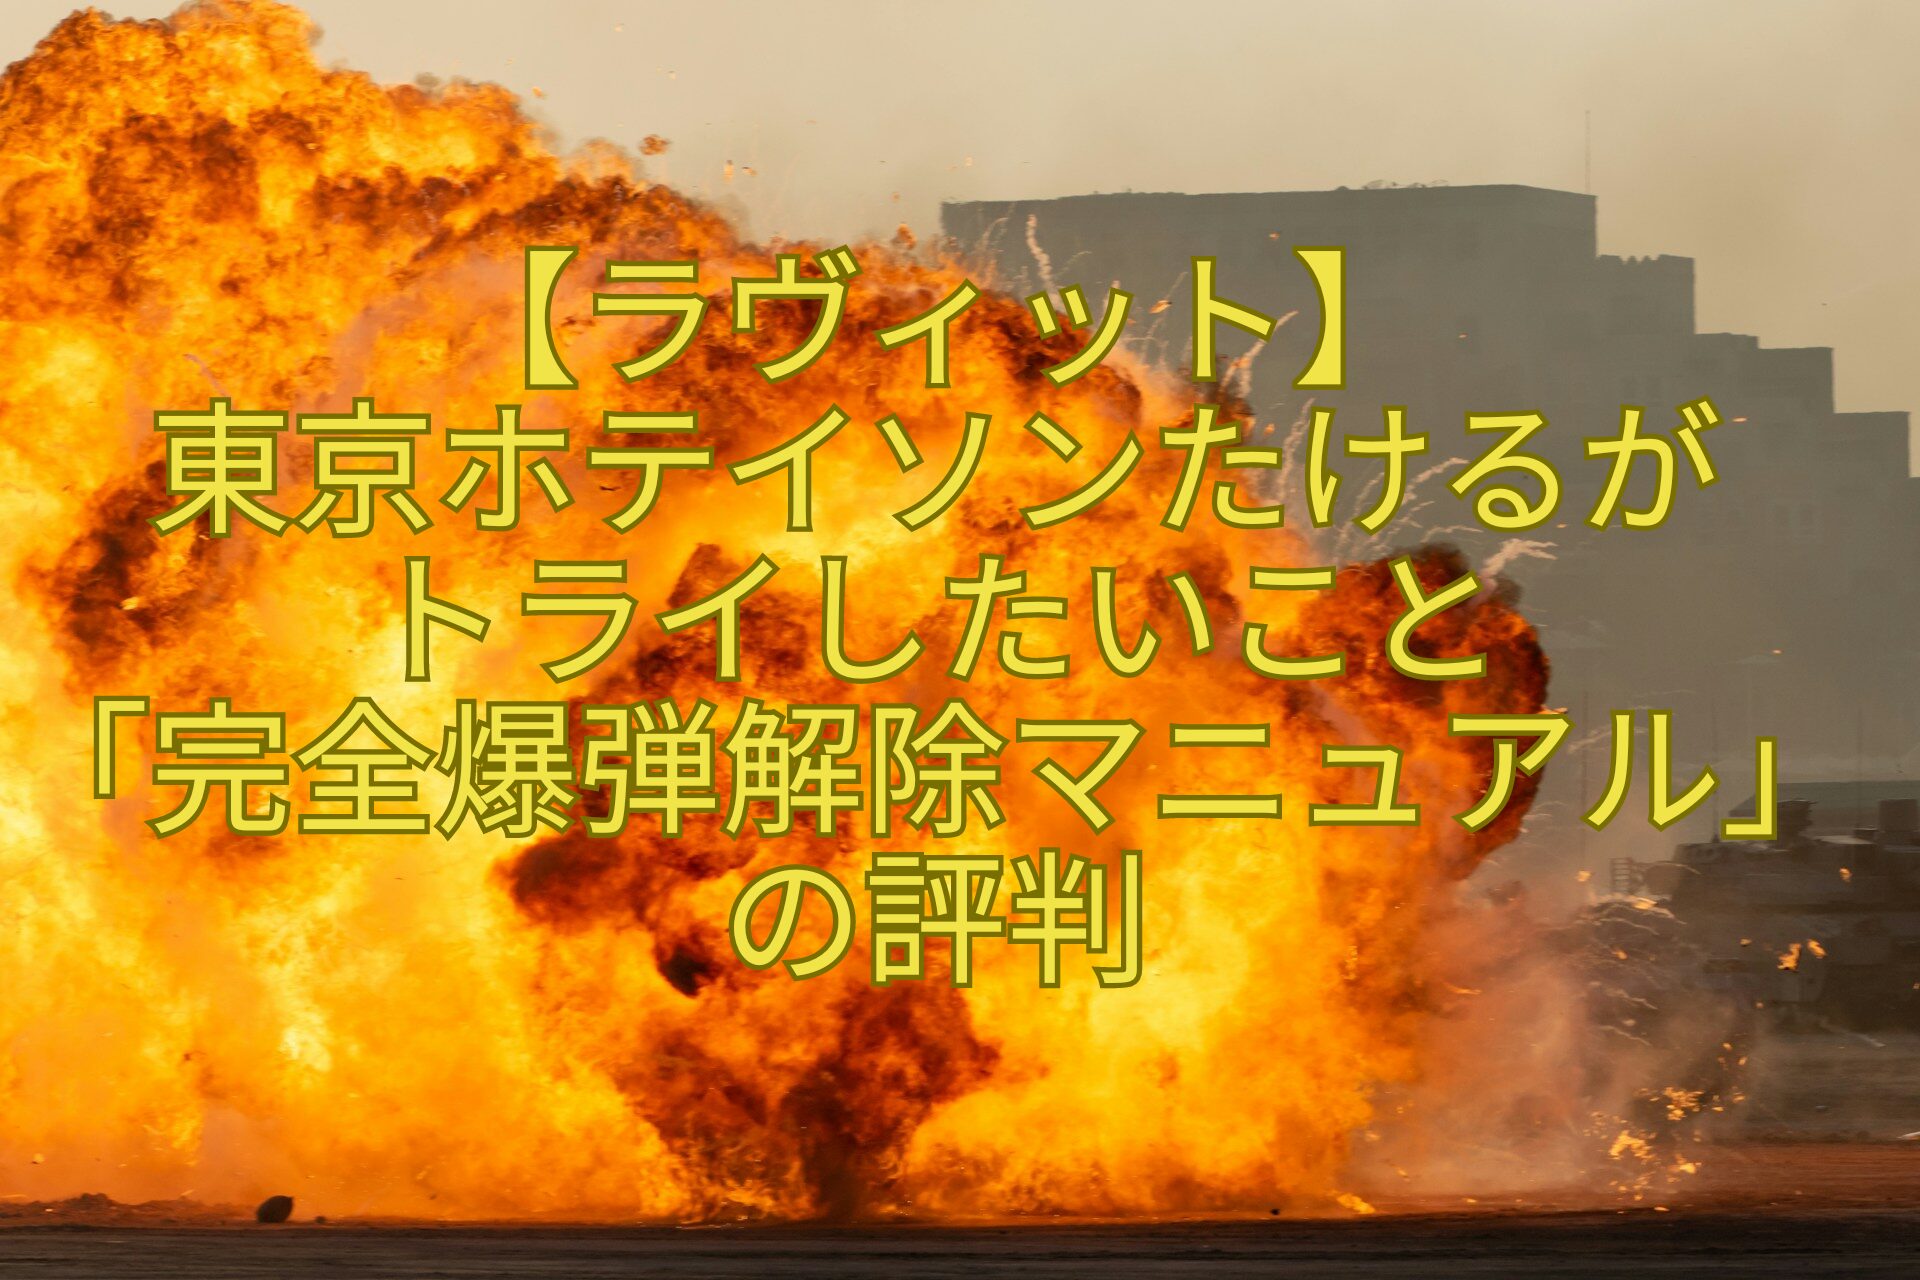 【ラヴィット】-東京ホテイソンたけるが-トライしたいこと-「完全爆弾解除マニュアル」の評判